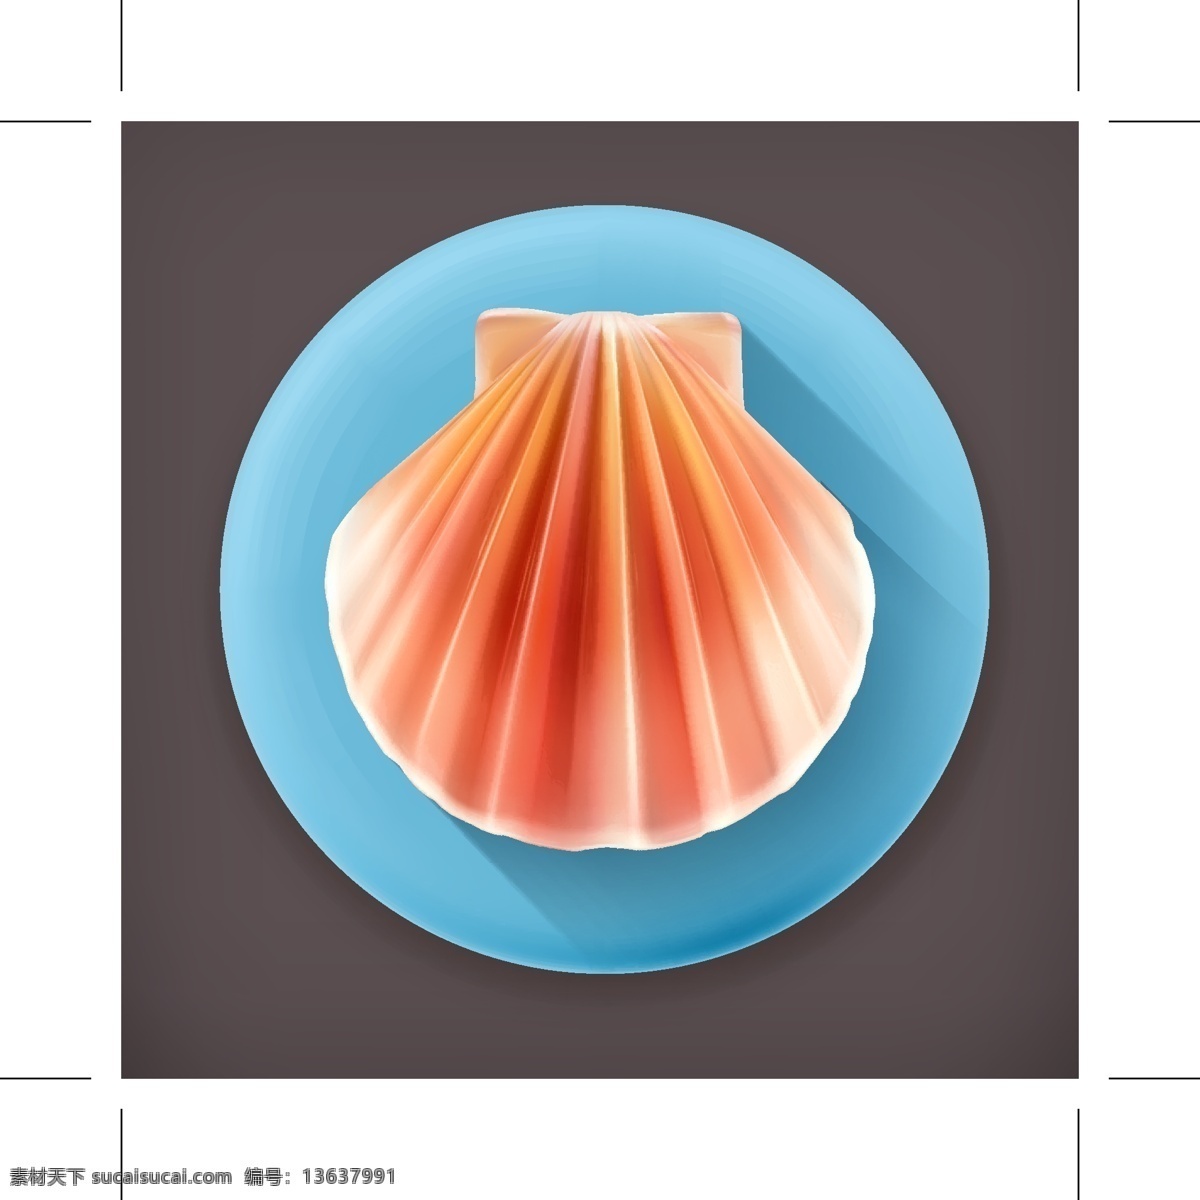 彩色 贝壳 图标素材 卡通 矢量素材 设计素材